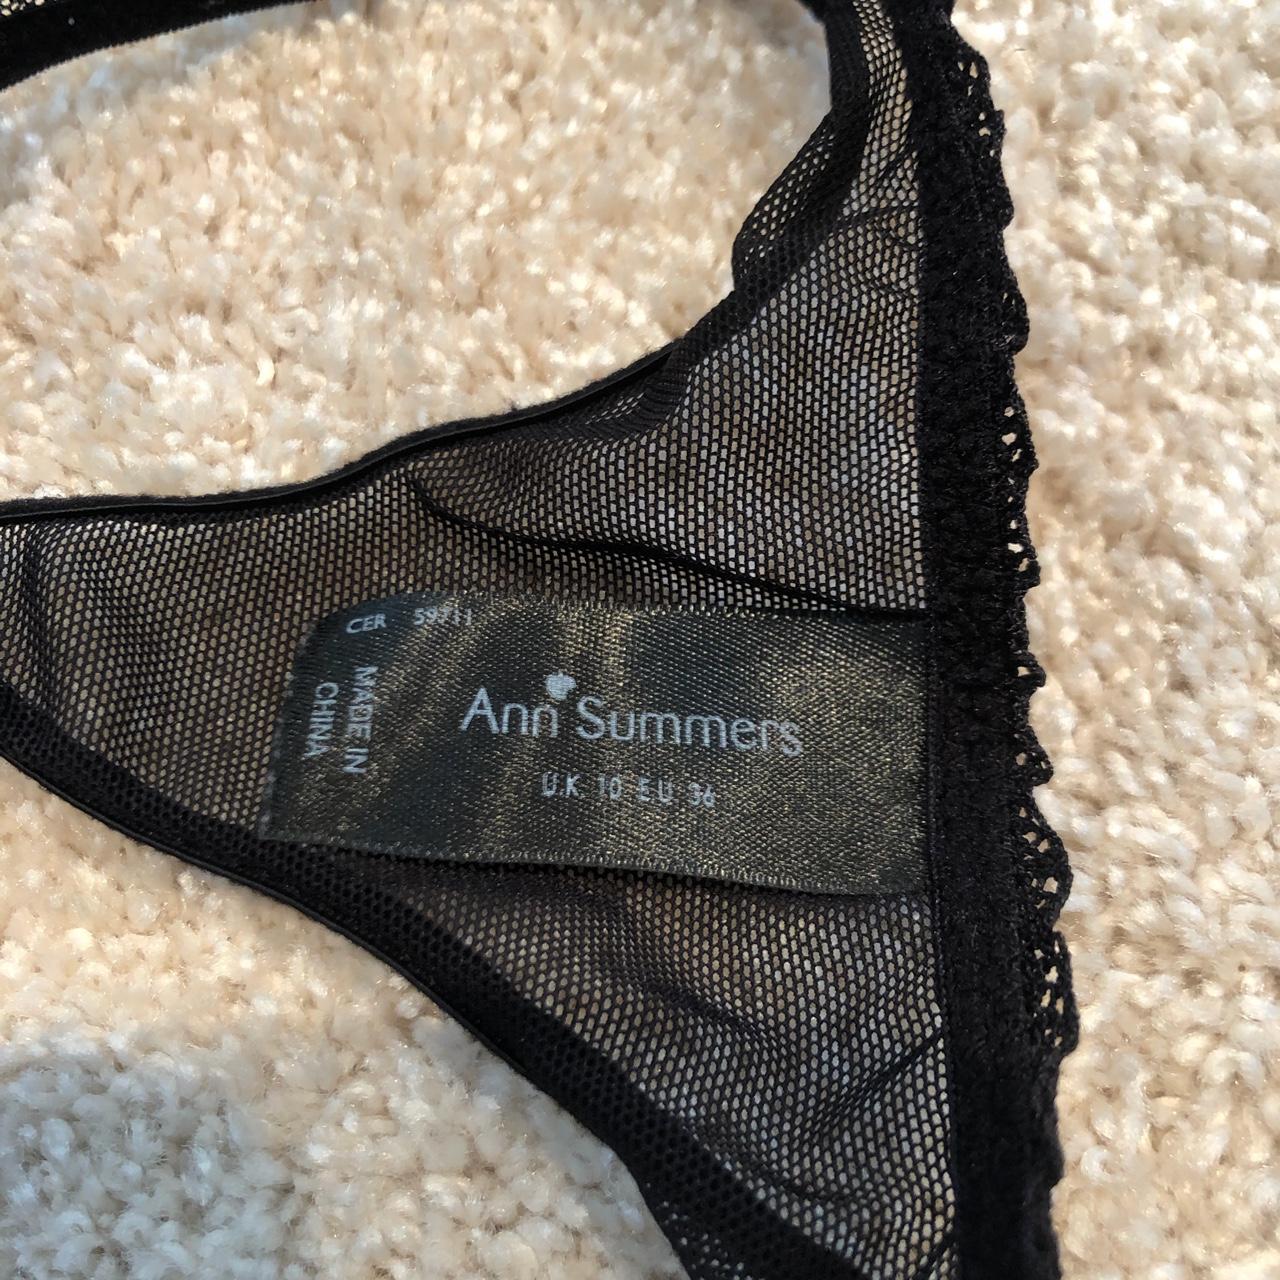 Ann summers underwear set- size 10 thong and 36D bra. - Depop